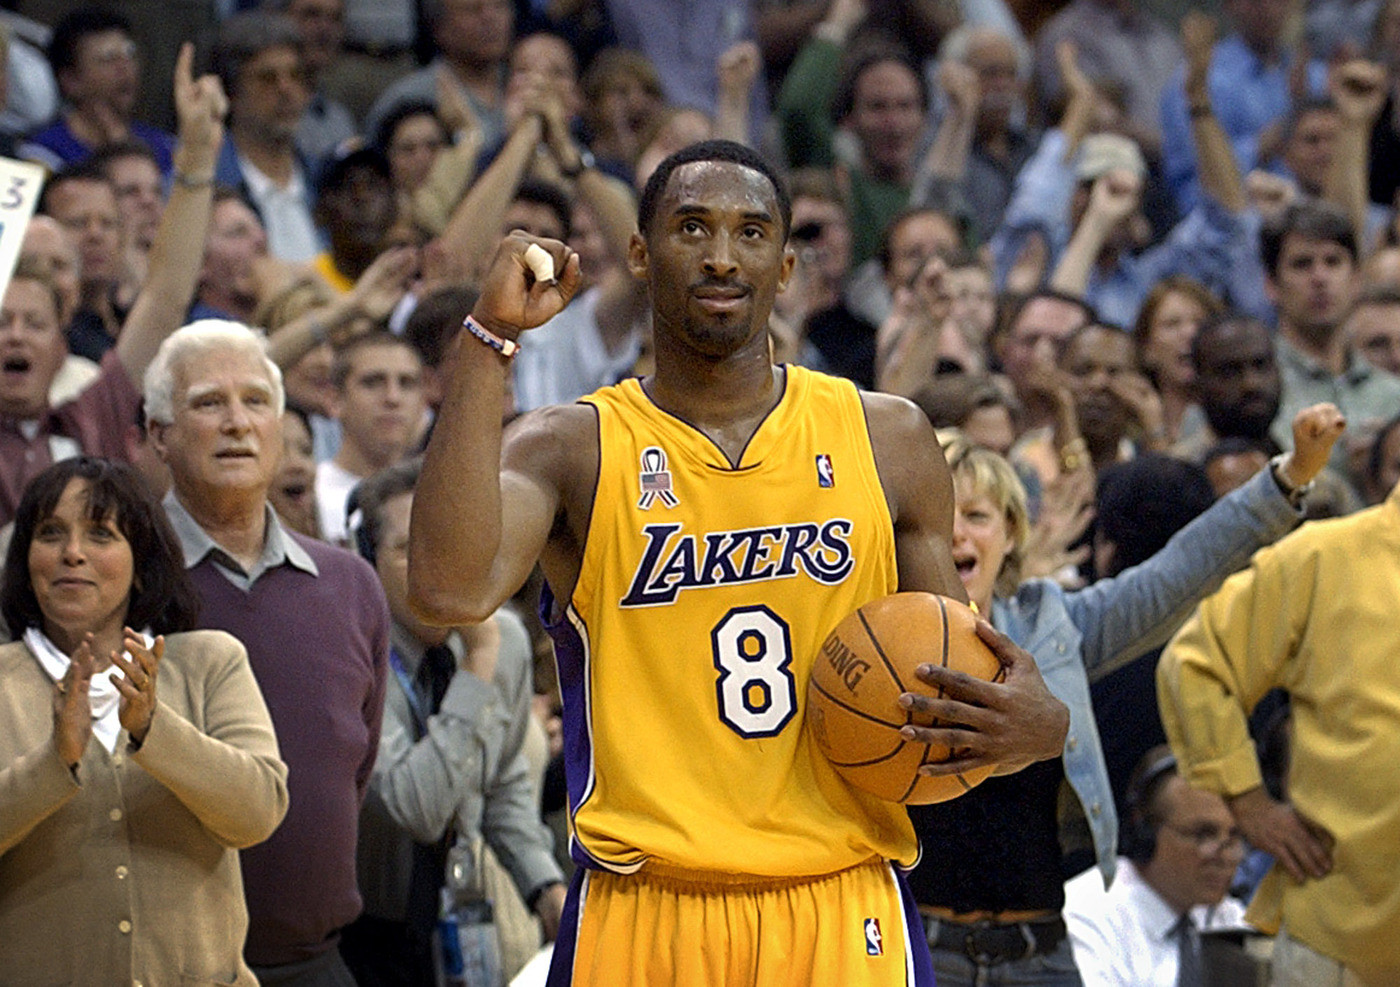 Lutto nel mondo NBA, è morto Kobe Bryant